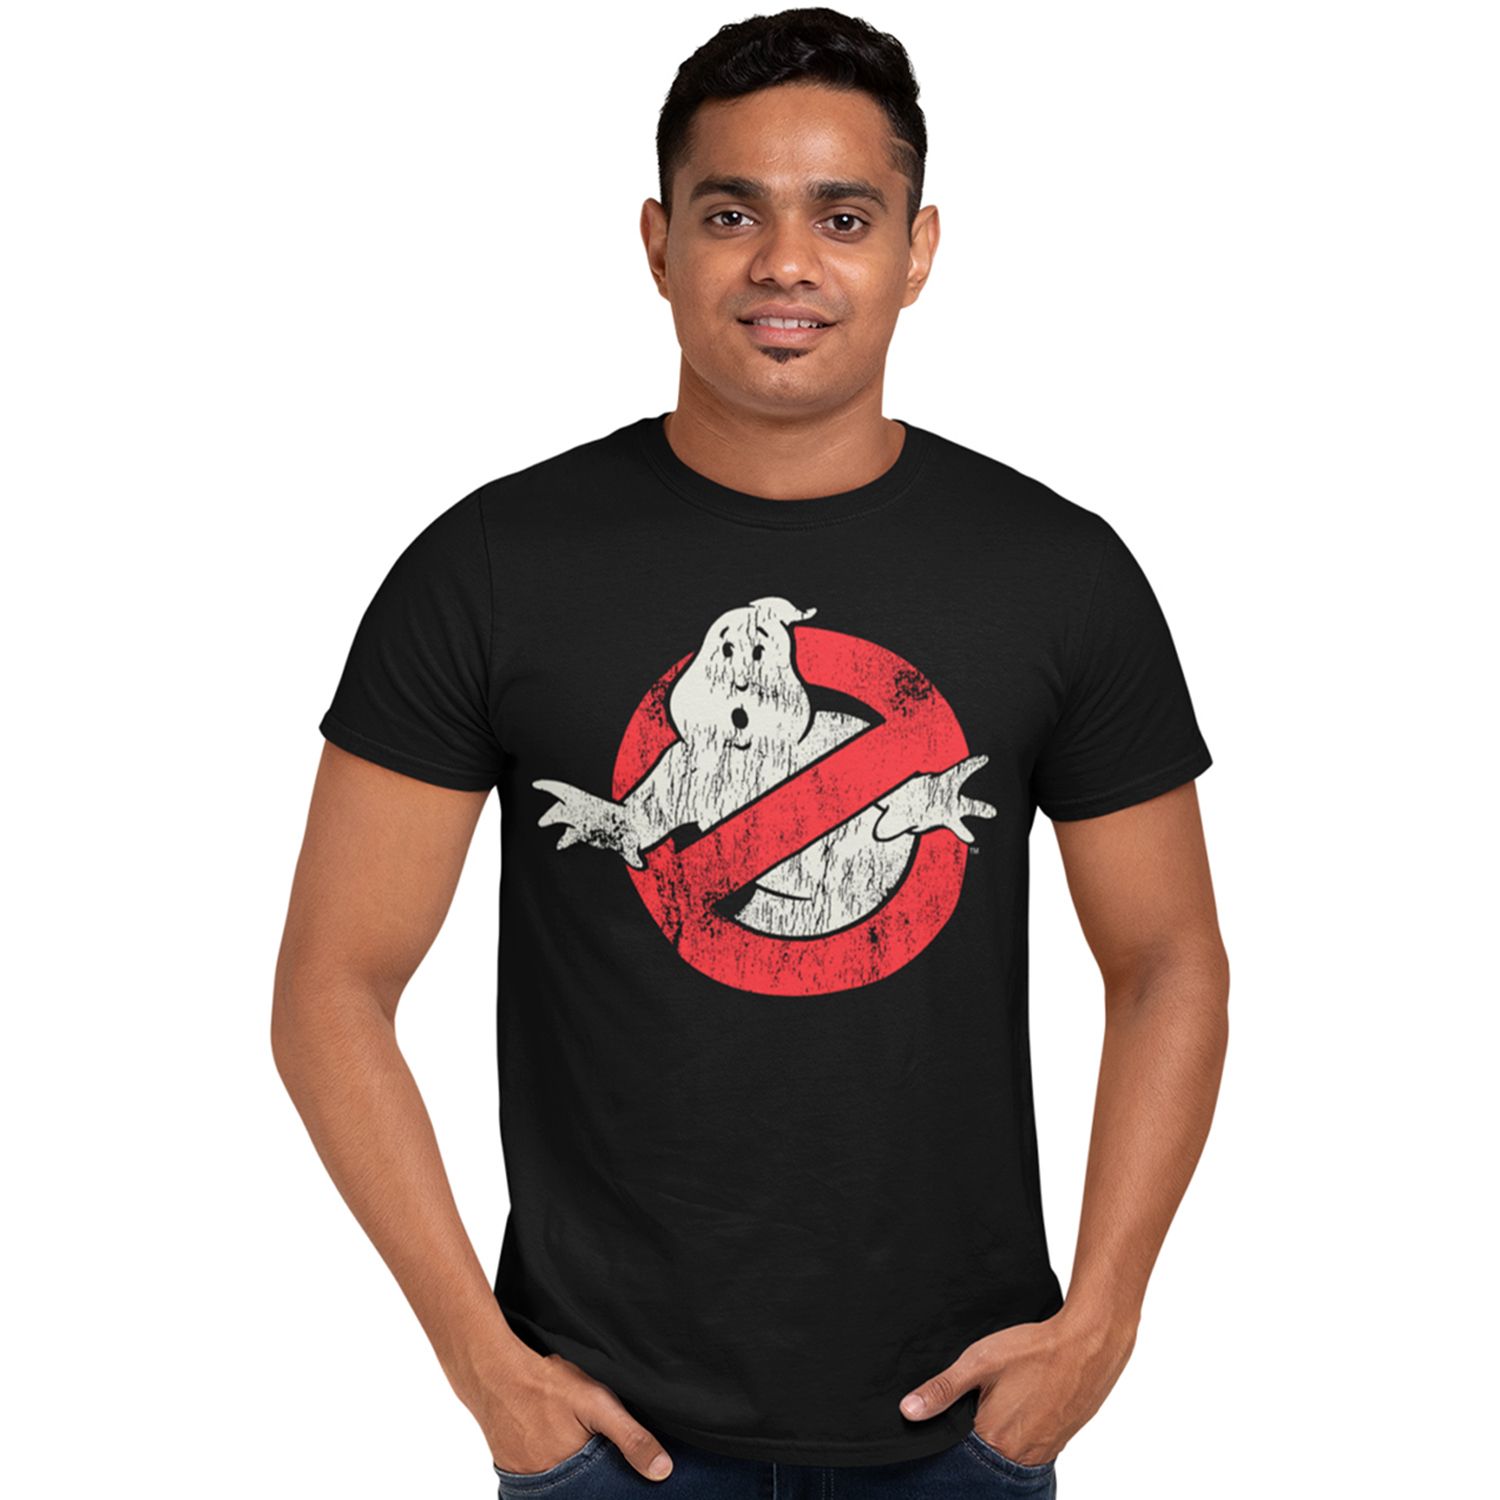 Мужская футболка с рисунком «Охотники за привидениями» Licensed Character